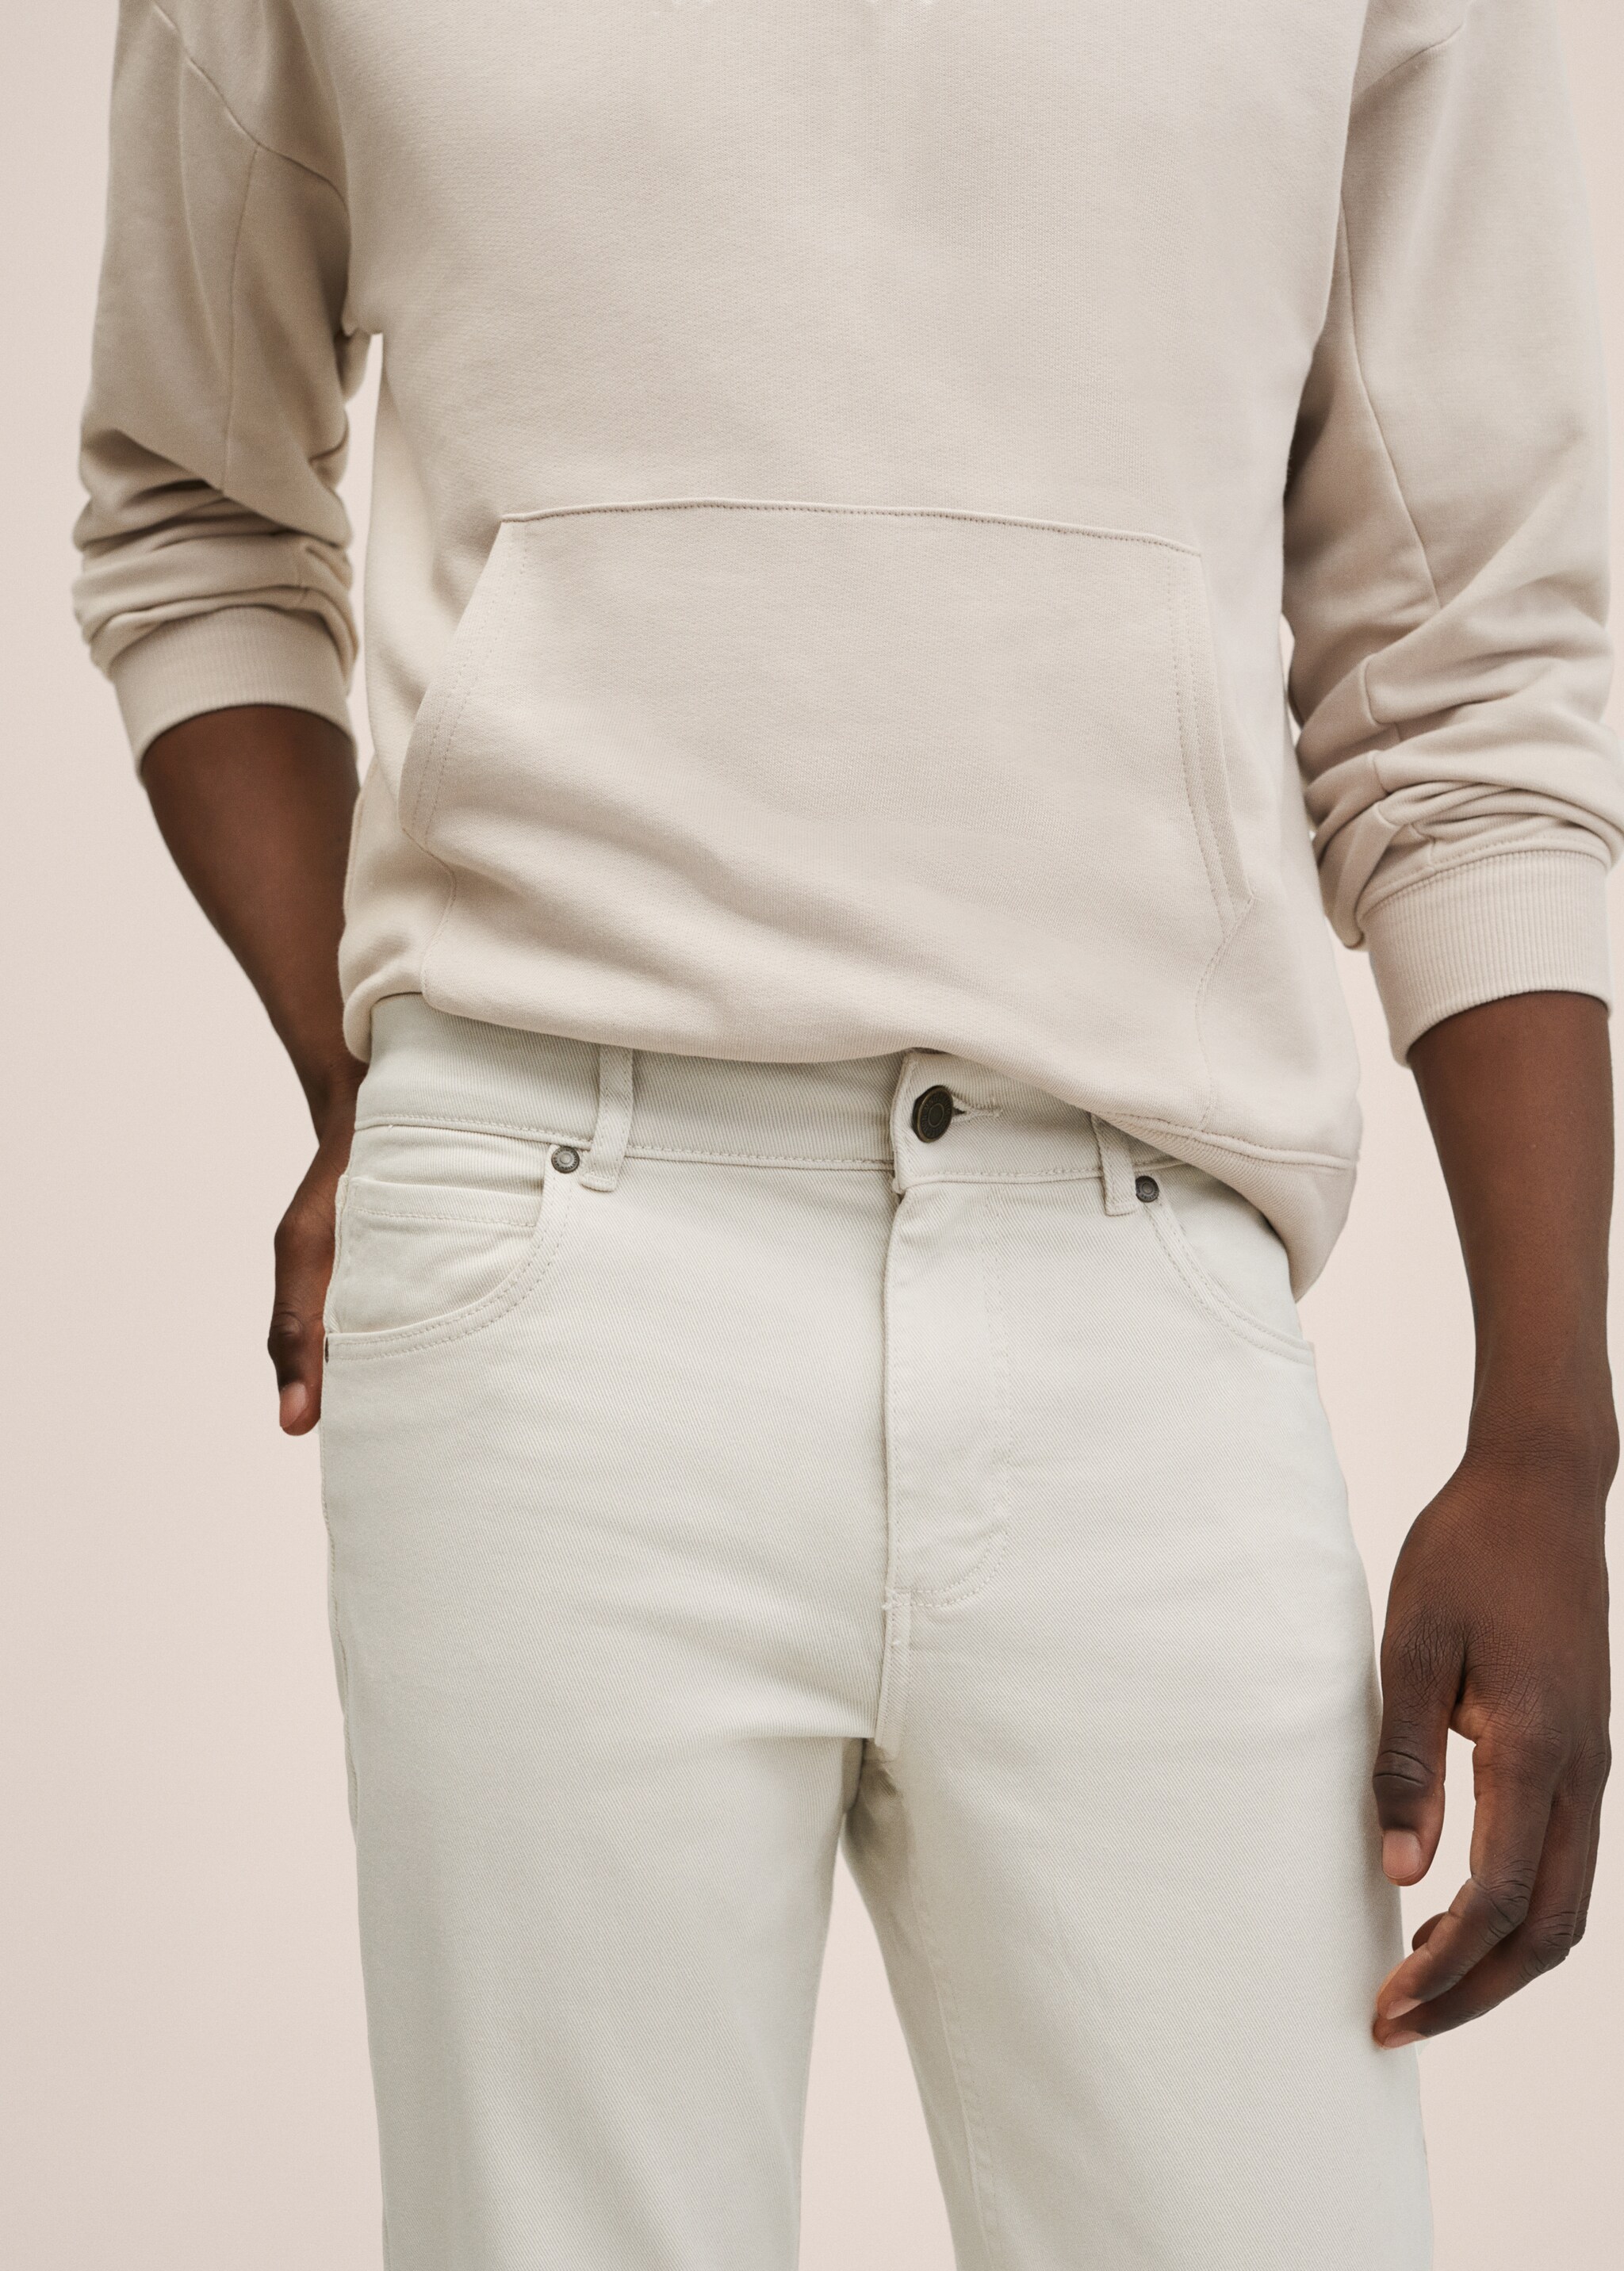 Pantalón regular fit algodón - Detalle del artículo 2